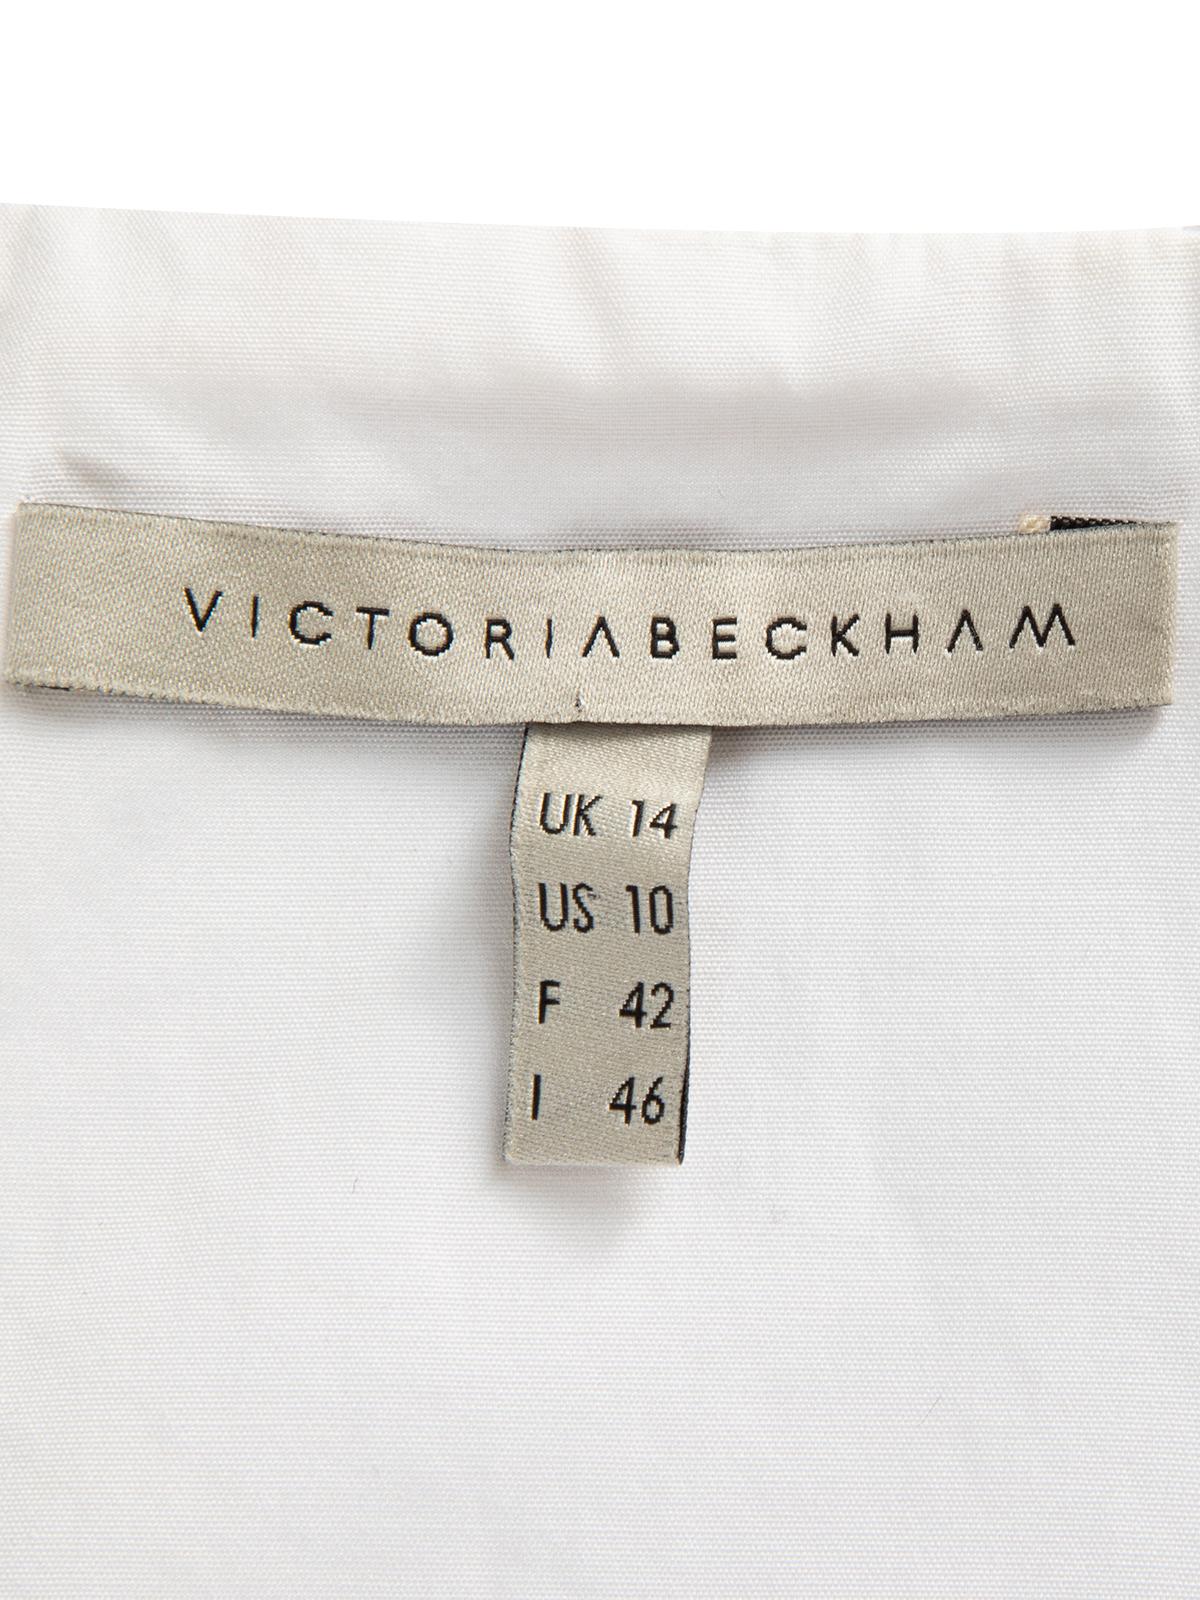 Victoria Beckham Women's Two Tone Colour Block Dress For Sale 3